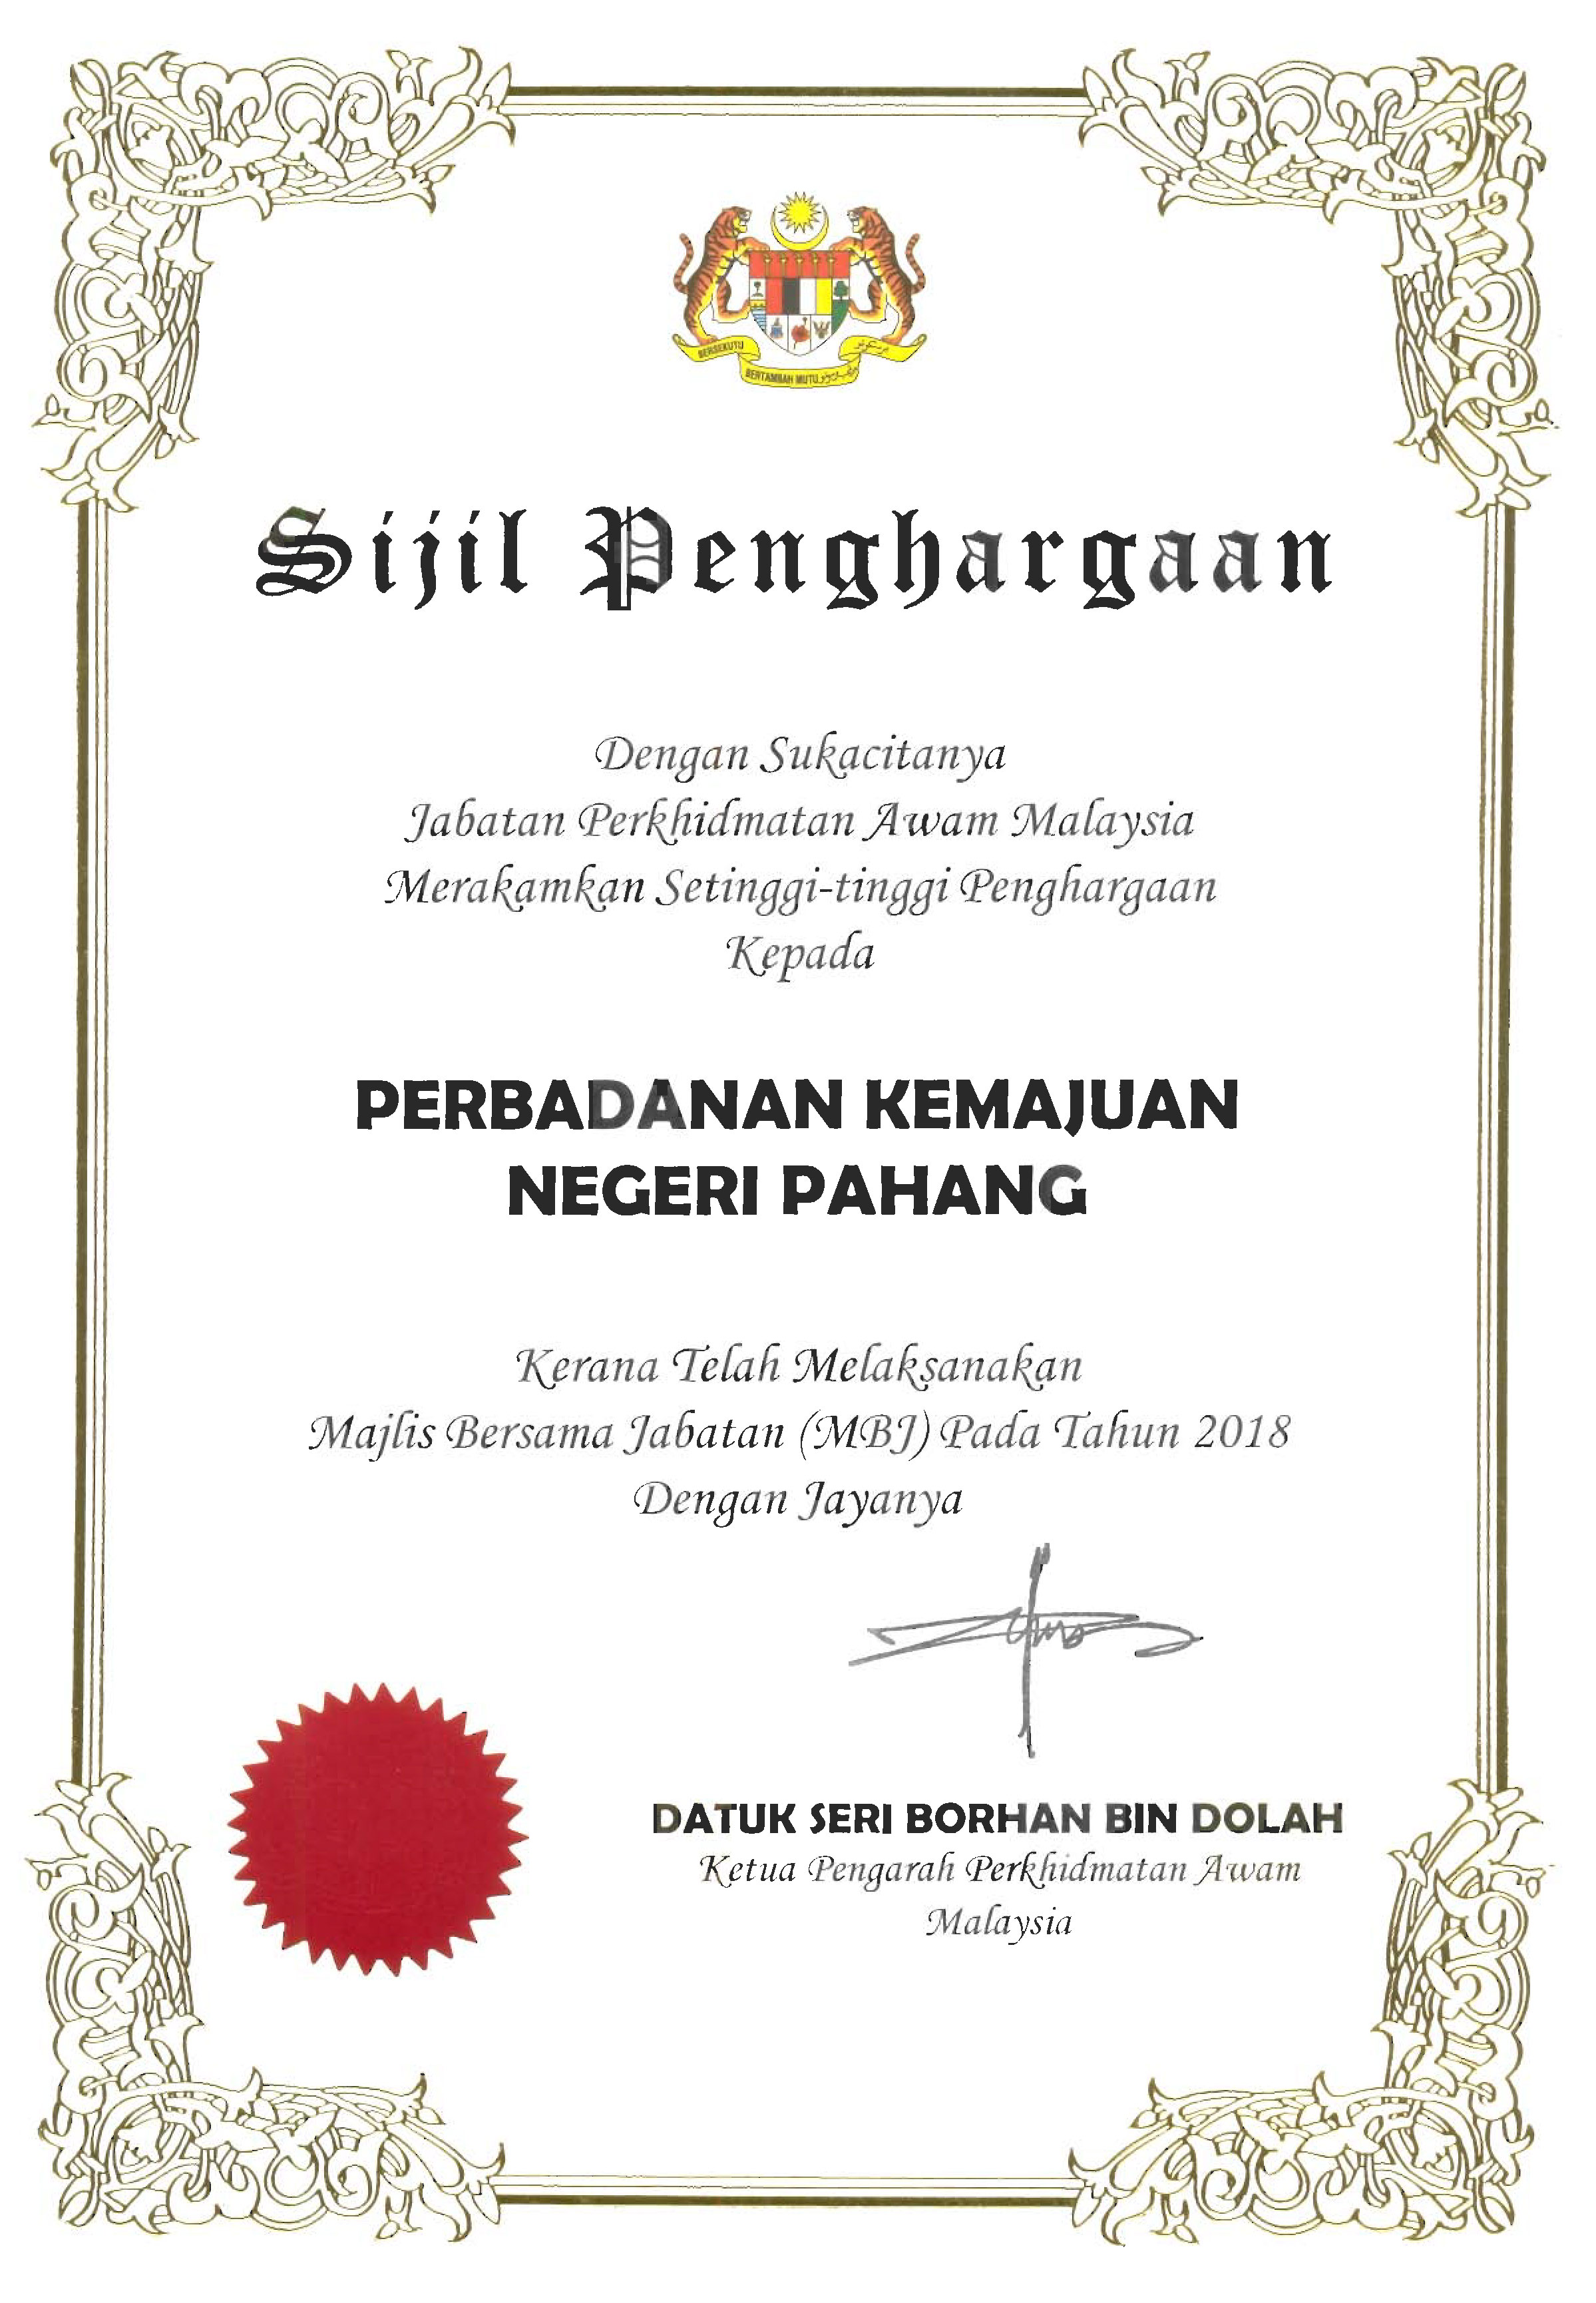 Perbadanan Kemajuan Negeri Pahang - Majlis Bersama Jabatan